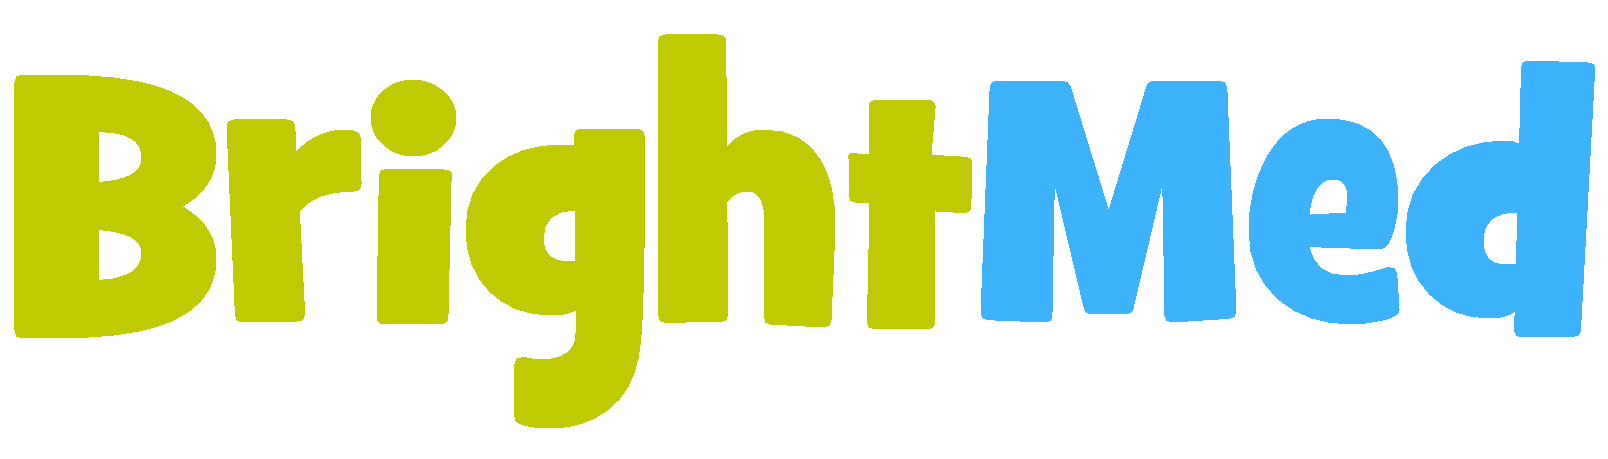 BrightMed logo